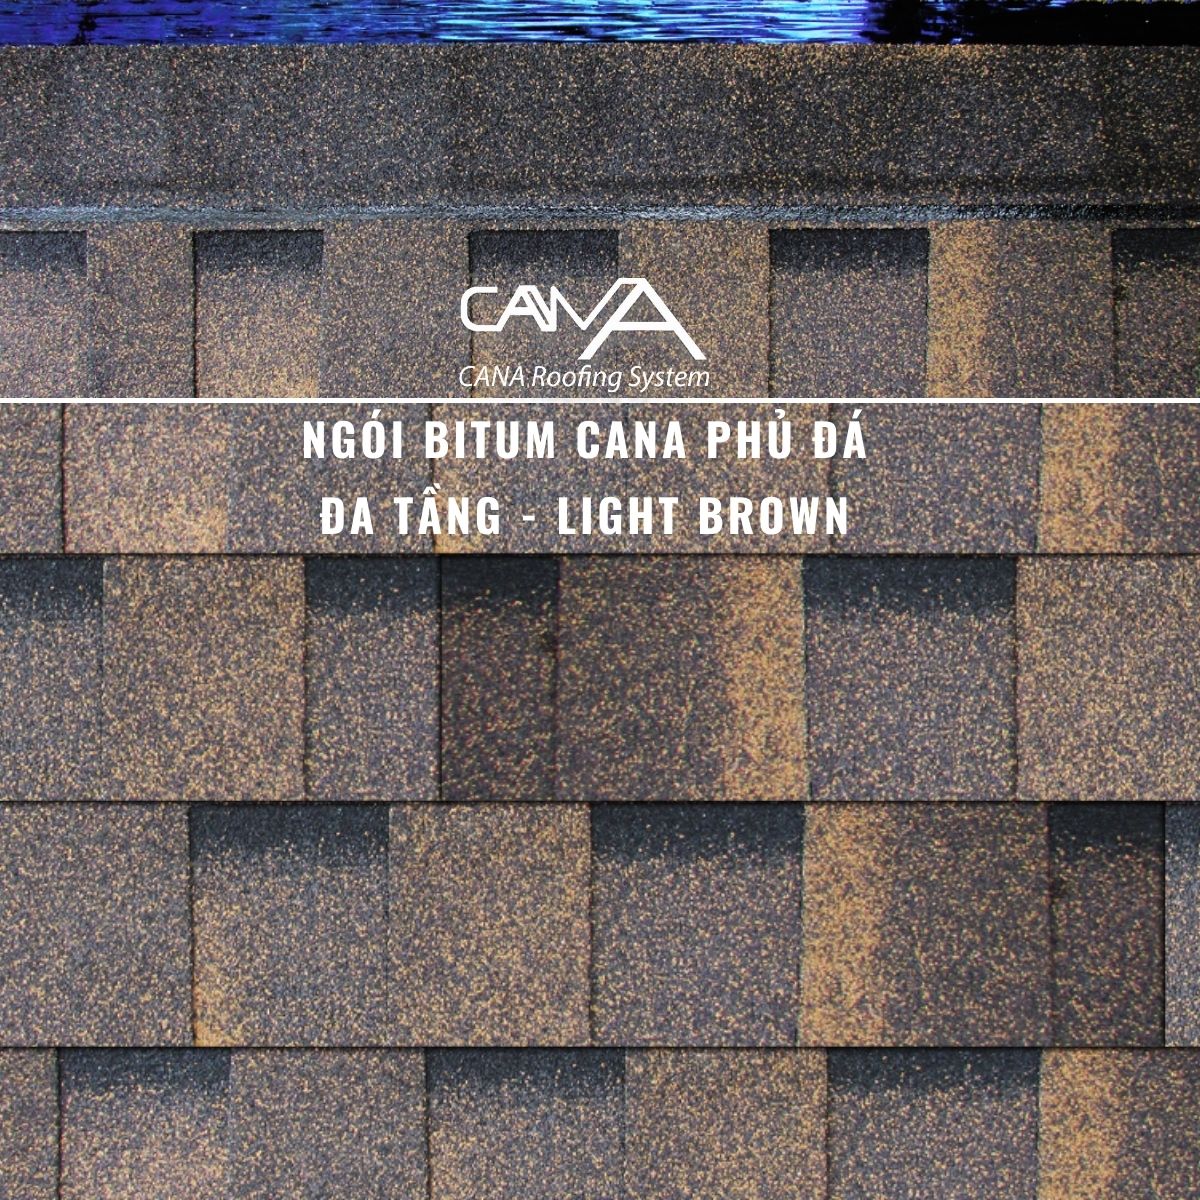 Ngói bitum phủ đá cana đa tầng light brown - ngói lợp màu nâu Hàn Quốc chống thấm và trang trí mái biệt thự, nhà gỗ, nhà tiền chế, đóng gói 14tấm/gói/2.54m2 mái phủ